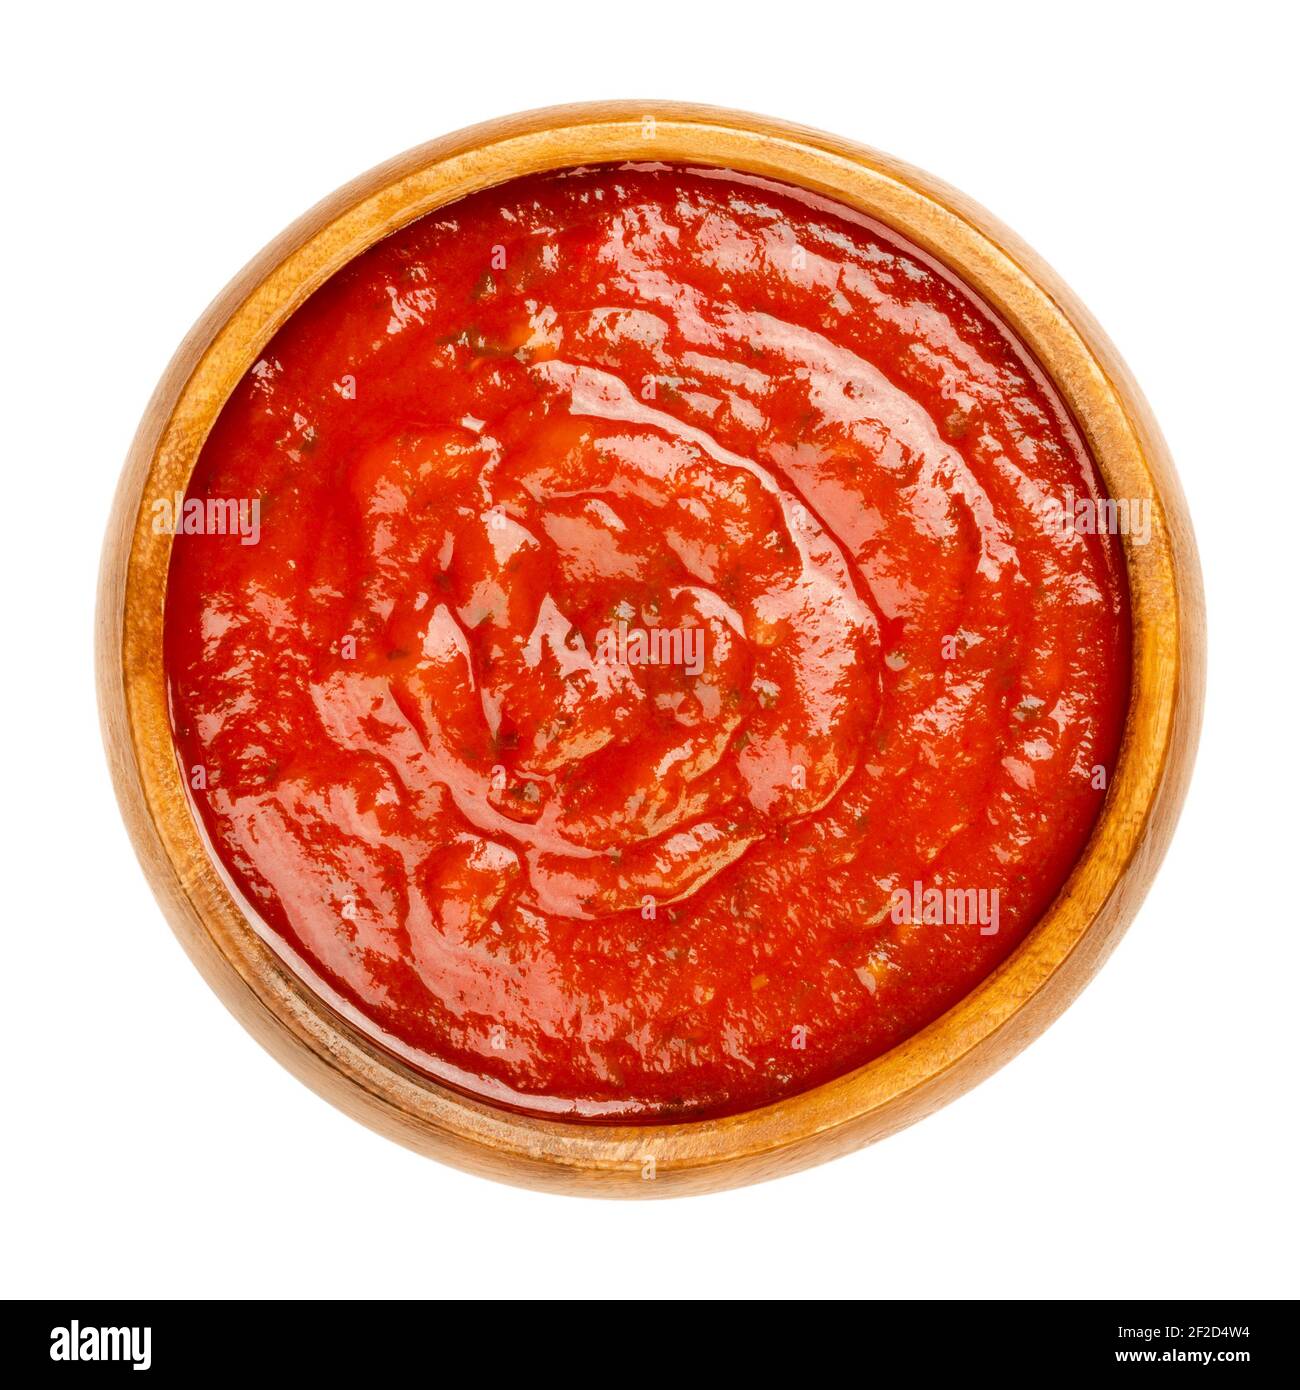 Arrabbiata salsa in una ciotola di legno. Salsa piccante di pomodoro italiana per la pasta, a base di pomodori, aglio e peperoncini rossi secchi, cotti in olio d'oliva. Foto Stock